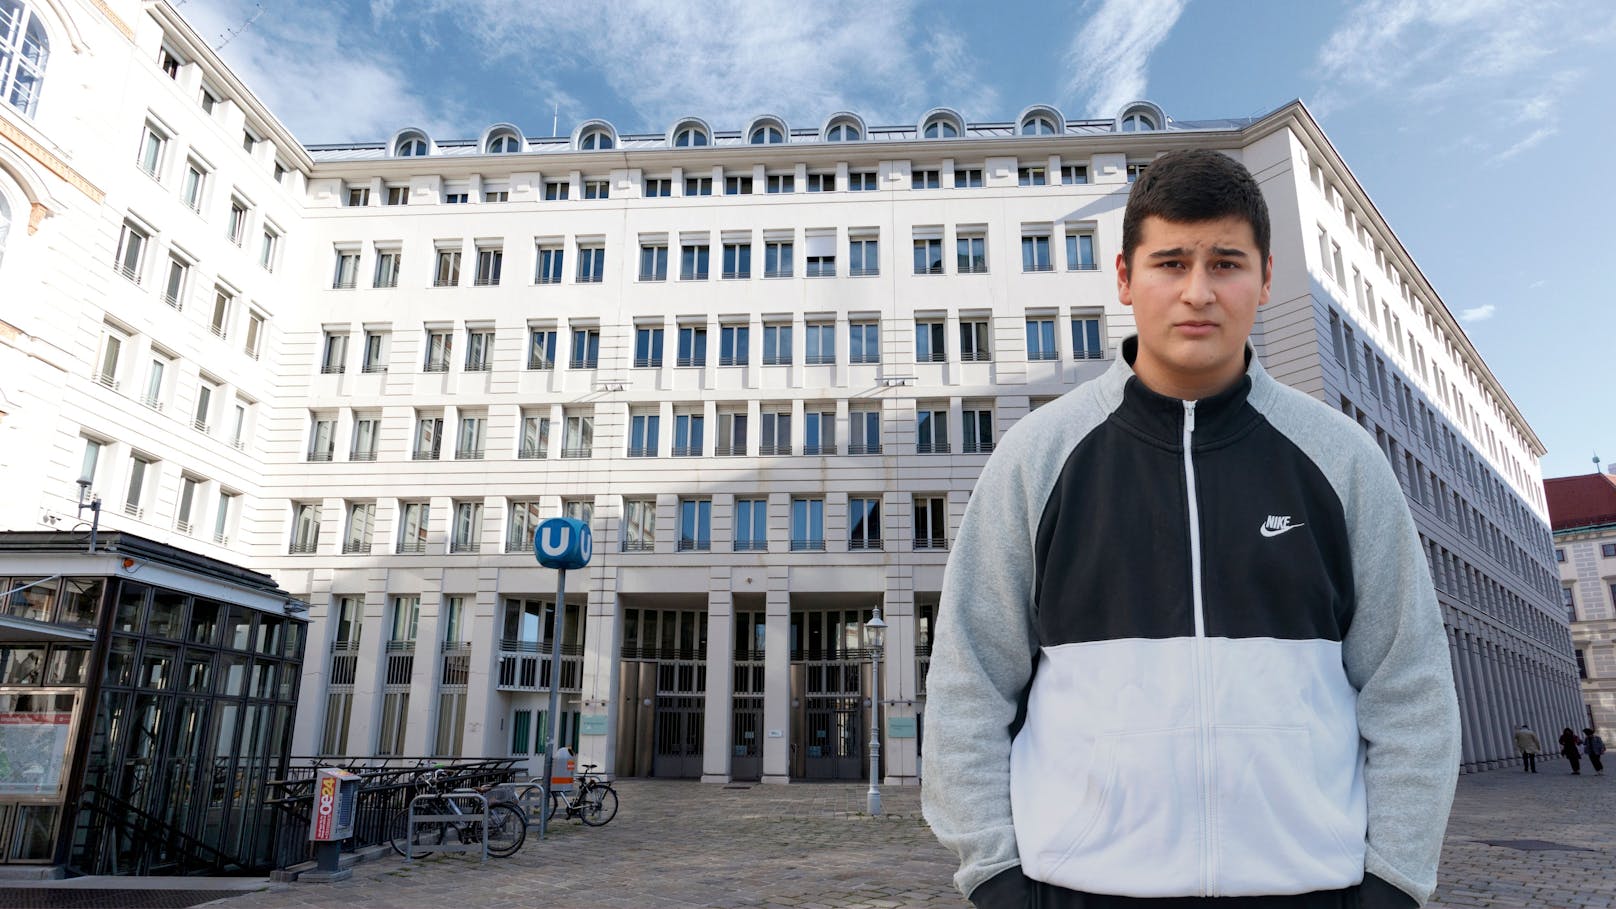 Jaba (16) droht Abschiebung, Mitschüler kämpfen für ihn